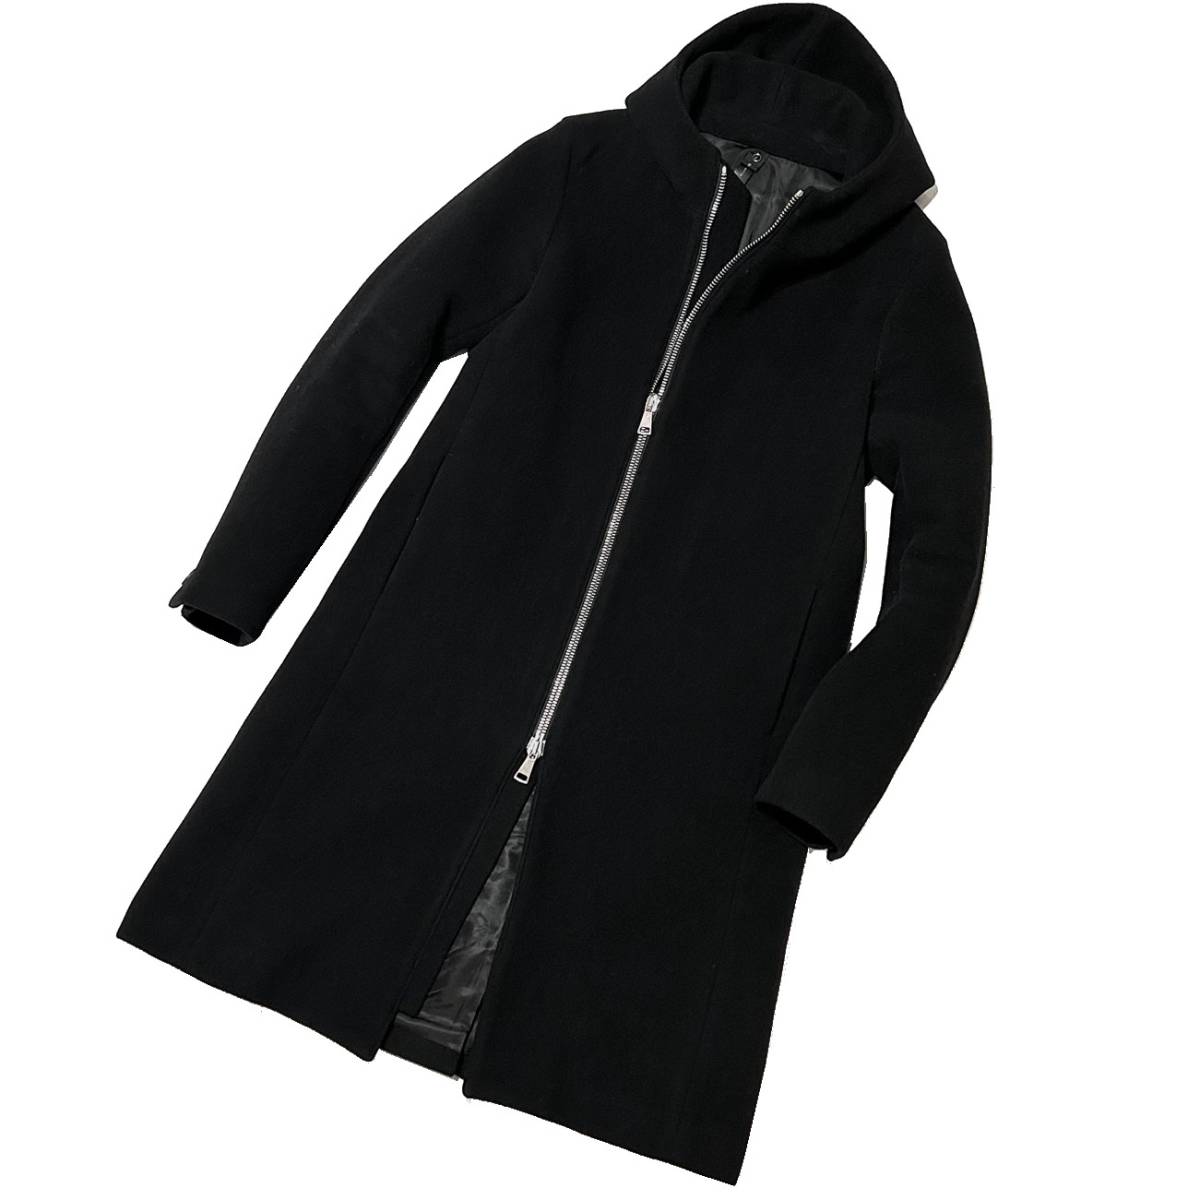  обычная цена 9 десять тысяч 20AW wjk fine wool zip wrap coat M размер штраф шерсть Zip LAP пальто Jun - si Moto akm 1piu блузон 